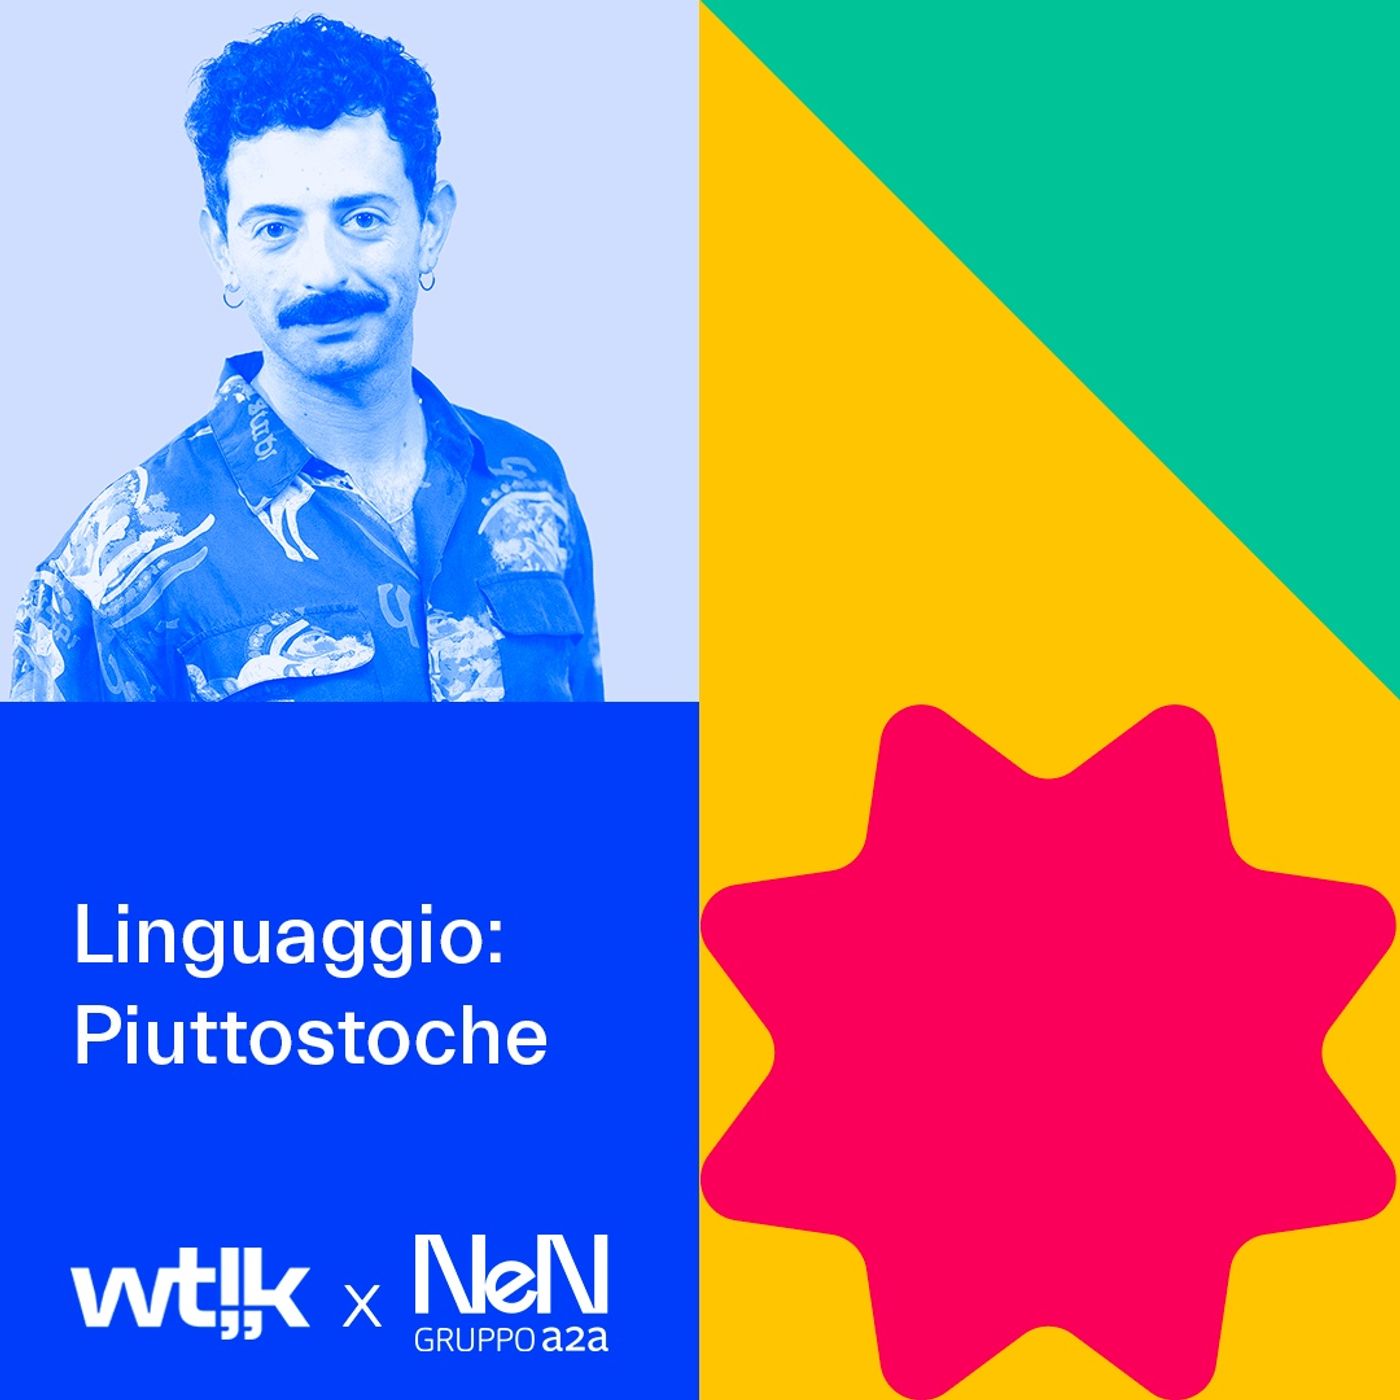 Linguaggio | Ep. 1 Falla Semplice Podcast con Pierluca Mariti